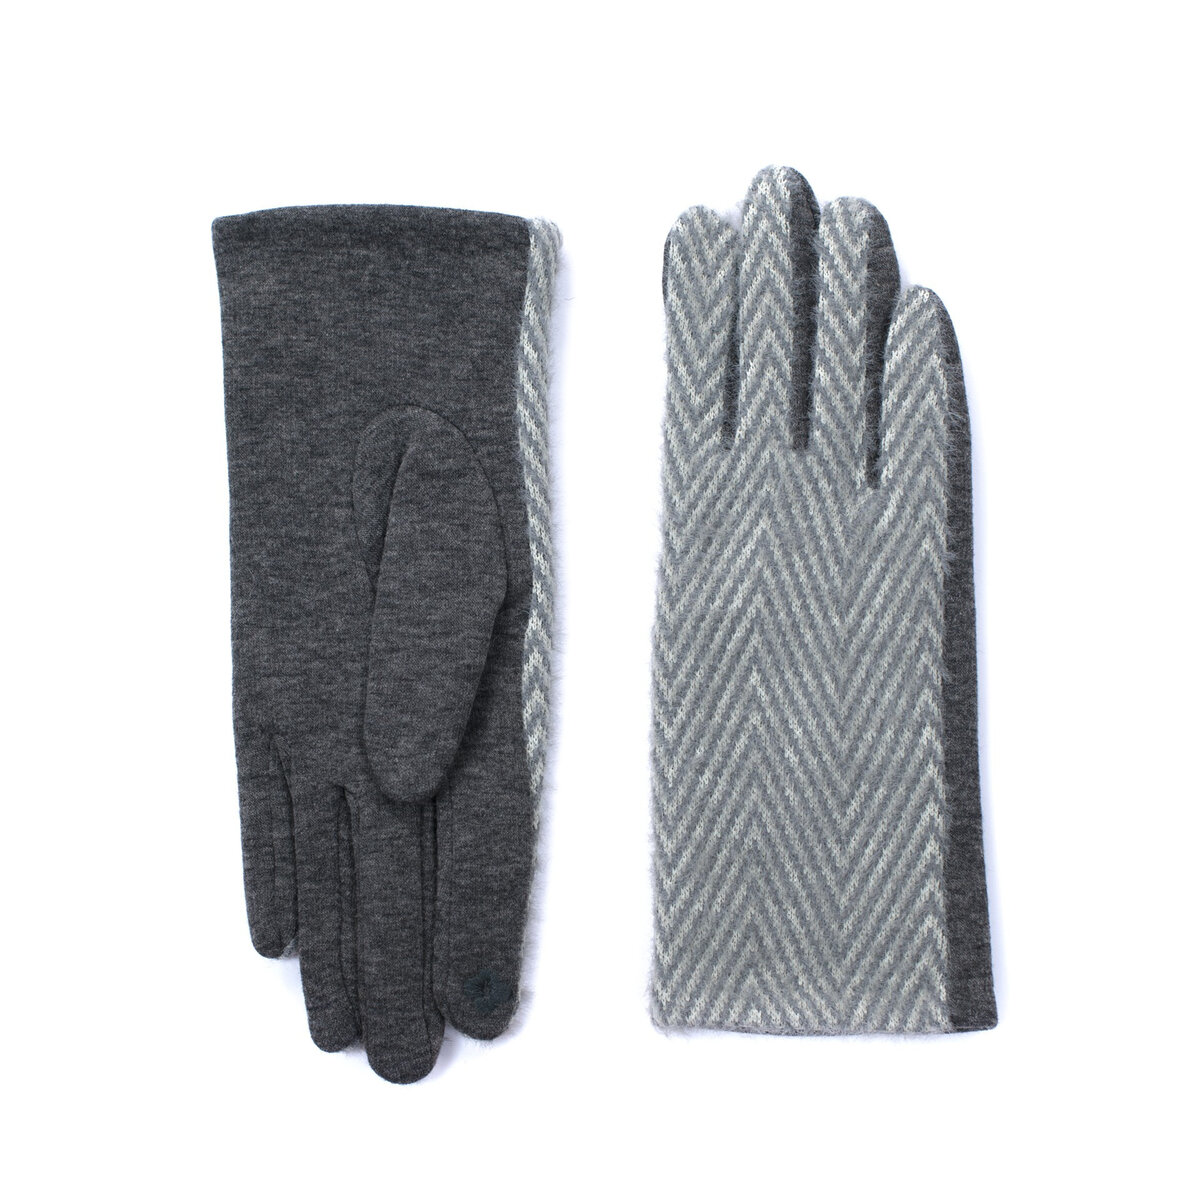 Šedé měkké rukavice s vzorem Herringbone - Polo Elegance, Univerzální i556_62713_264_8